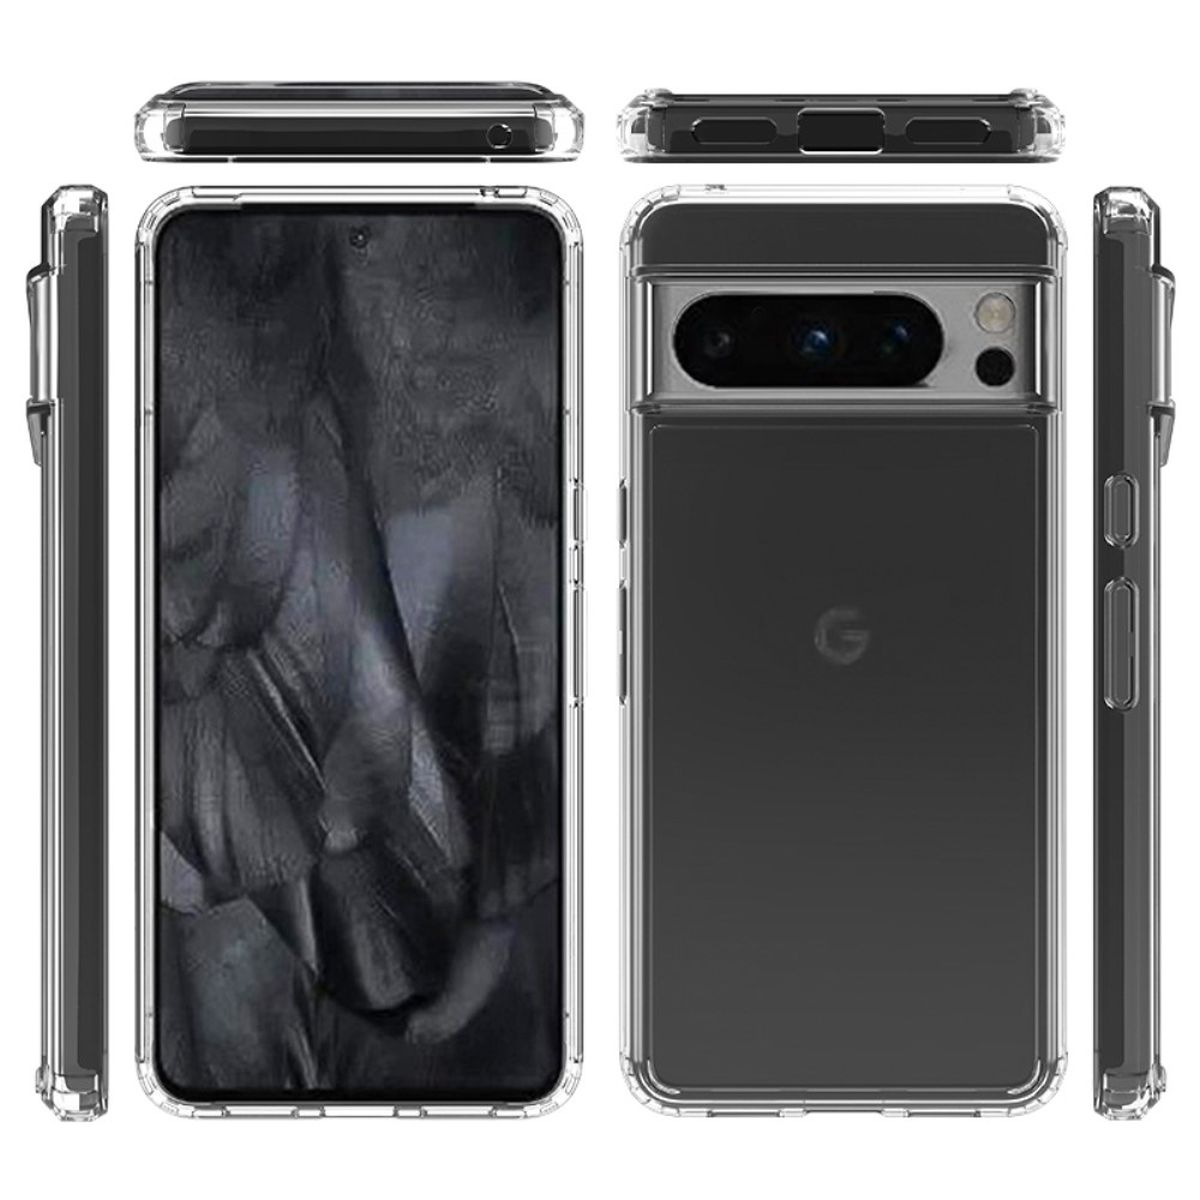 Hülle für Google Pixel 8 Pro Handyhülle Tasche Hybrid Case Schutzhülle Cover Klar